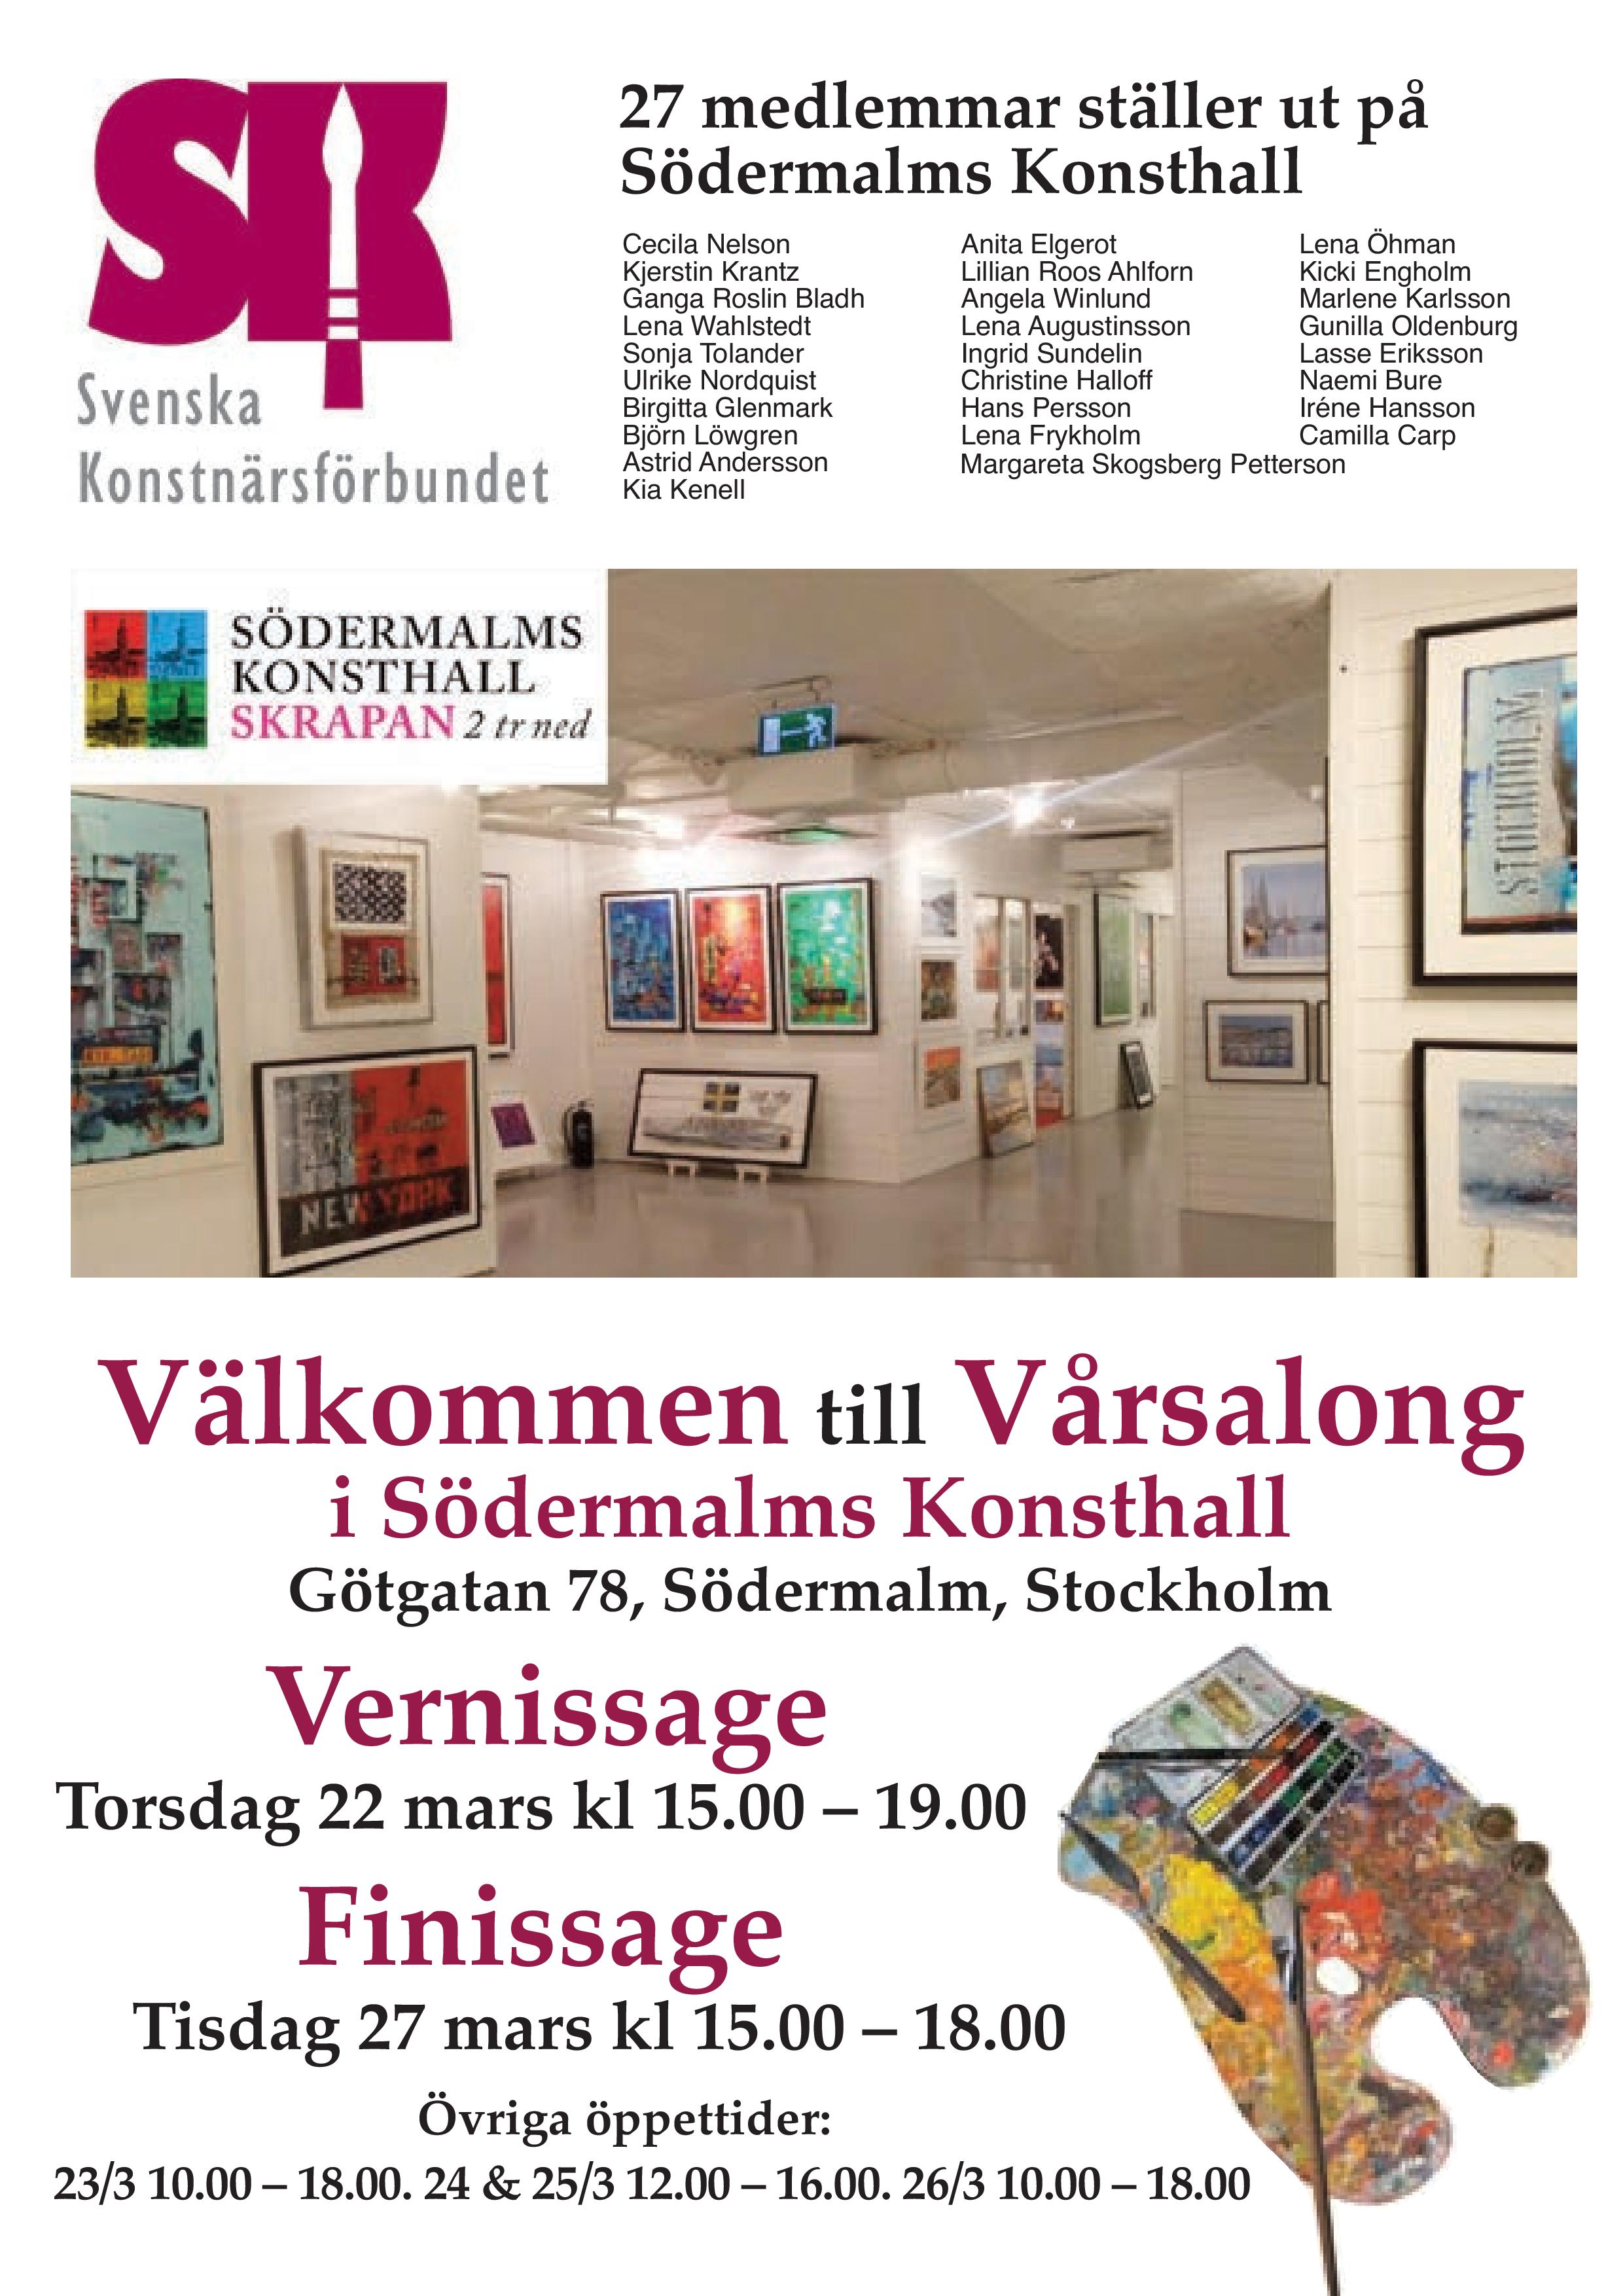 Inbjudan Vårsalong Södermalms Konsthall 2018-page-001.jpg